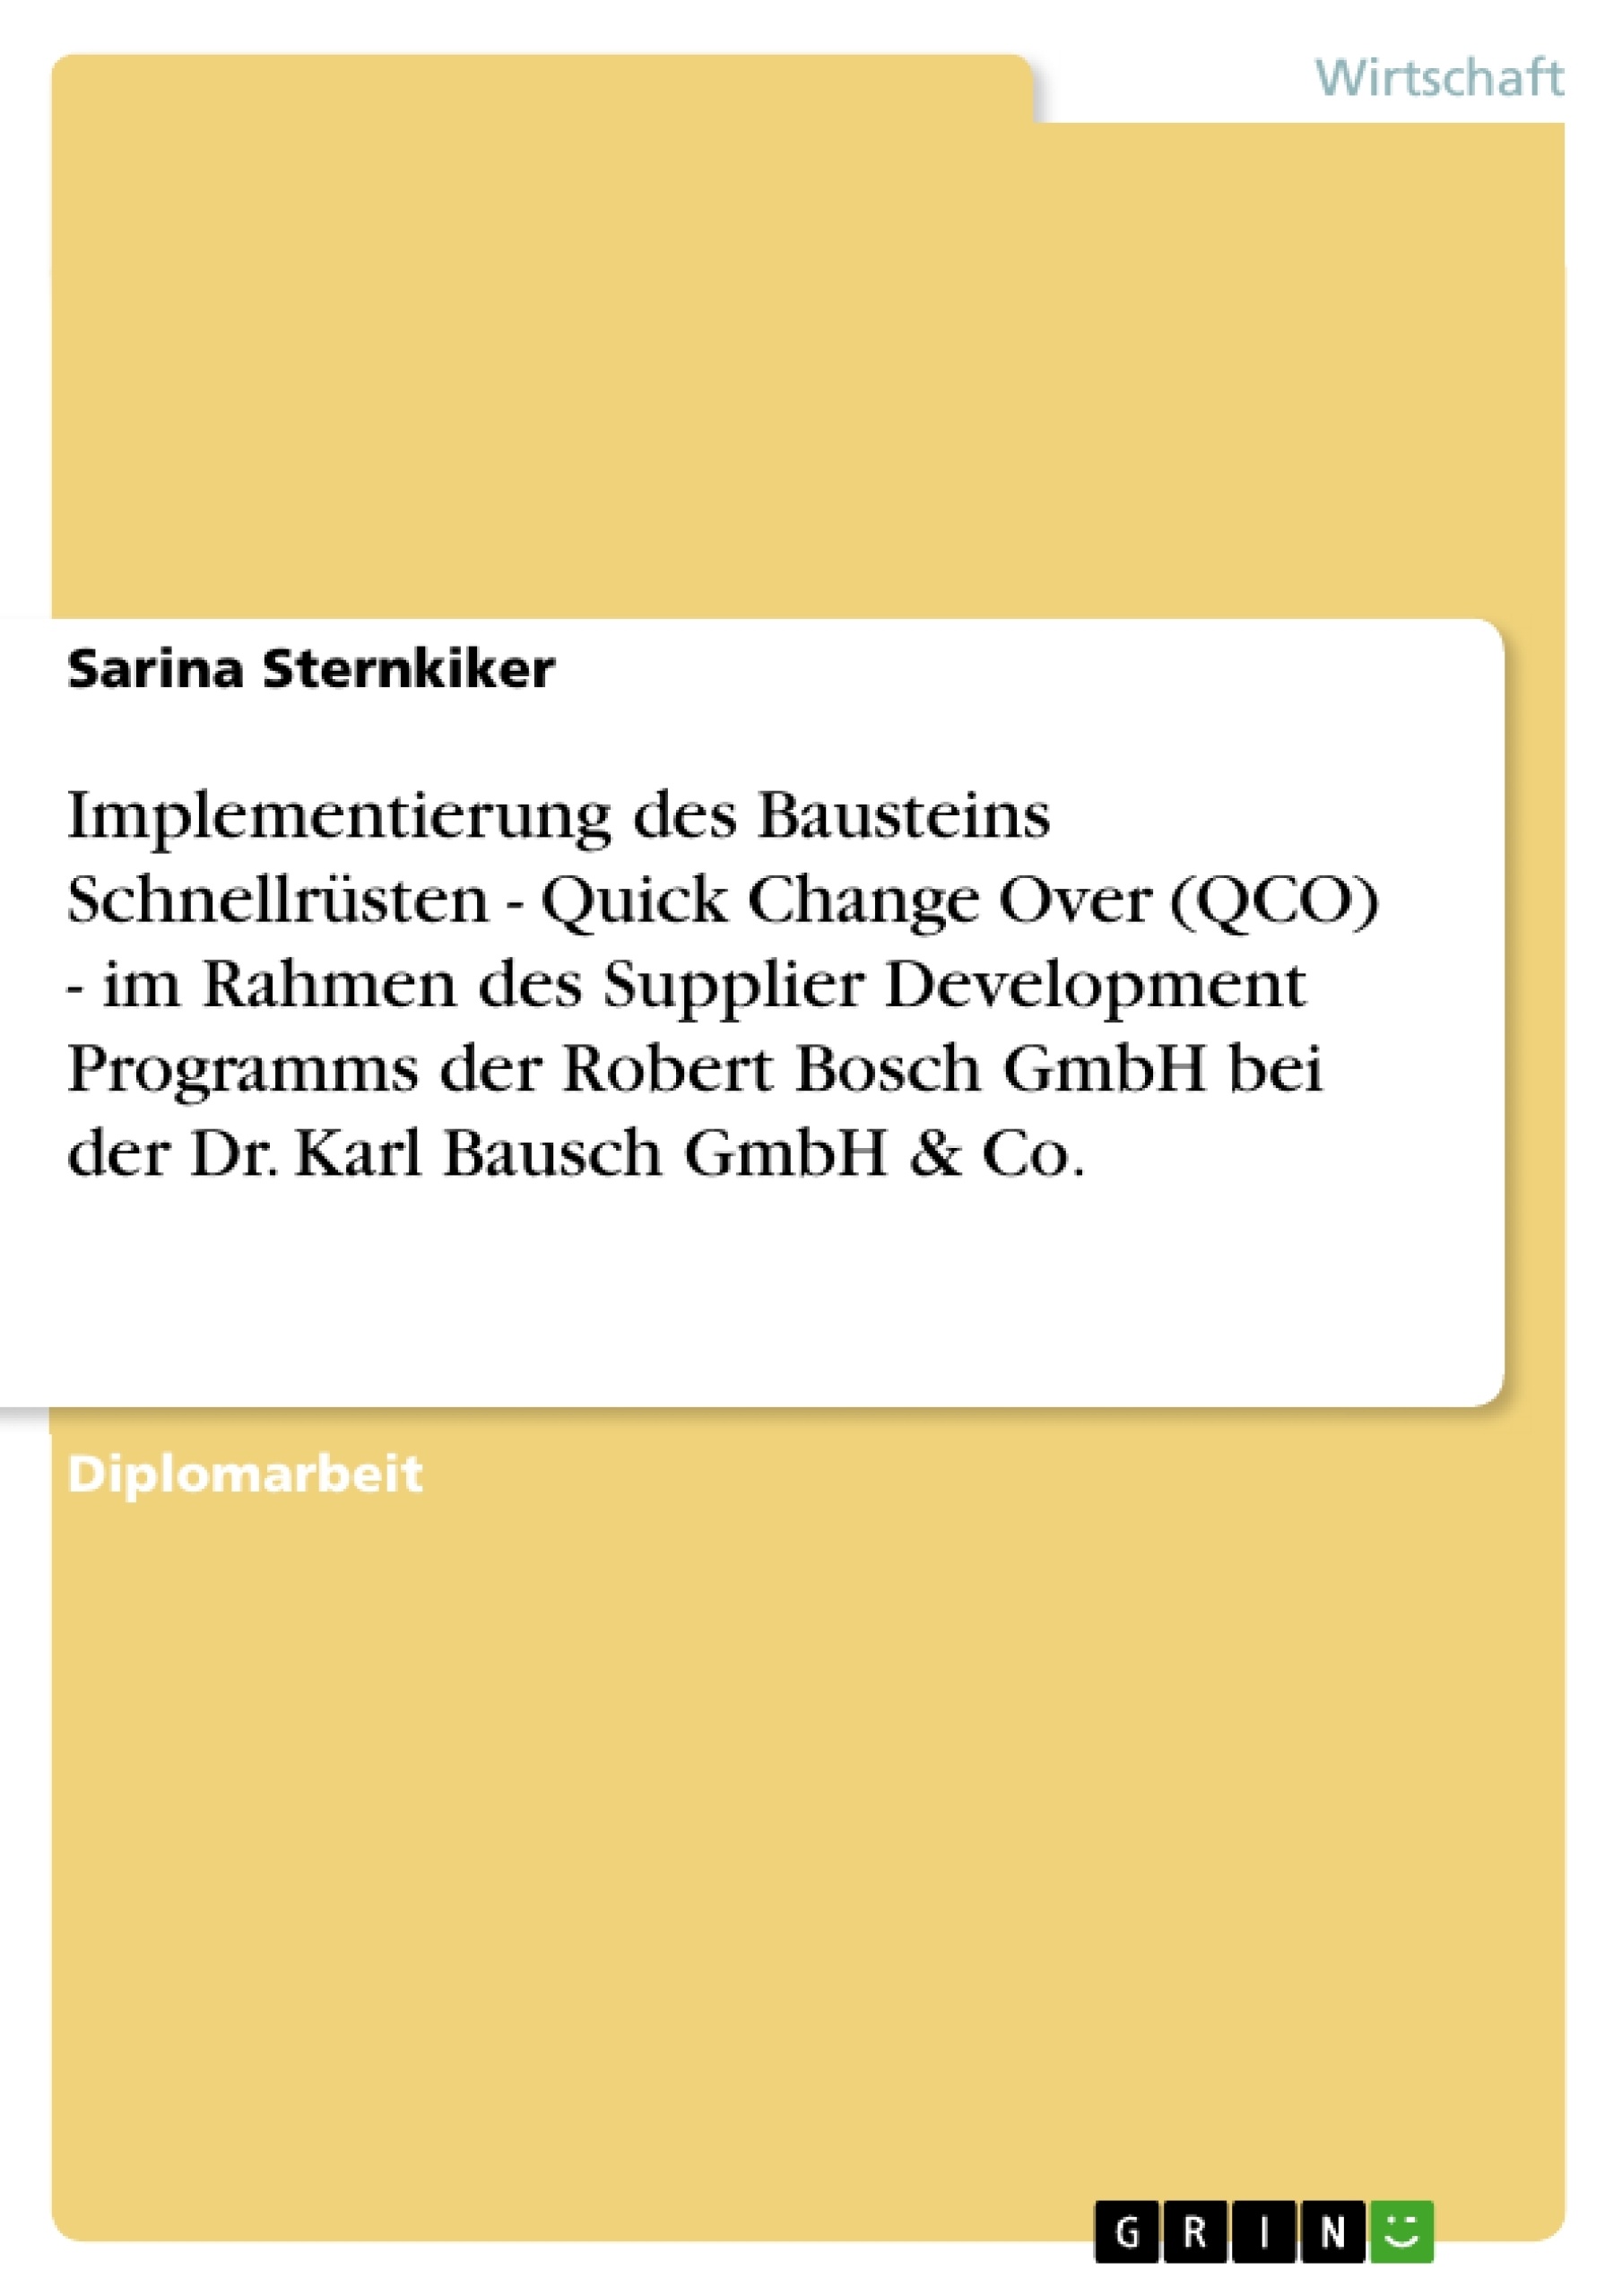 Titel: Implementierung des Bausteins Schnellrüsten - Quick Change Over (QCO) - im Rahmen des Supplier Development Programms der Robert Bosch GmbH bei der Dr. Karl Bausch GmbH & Co.